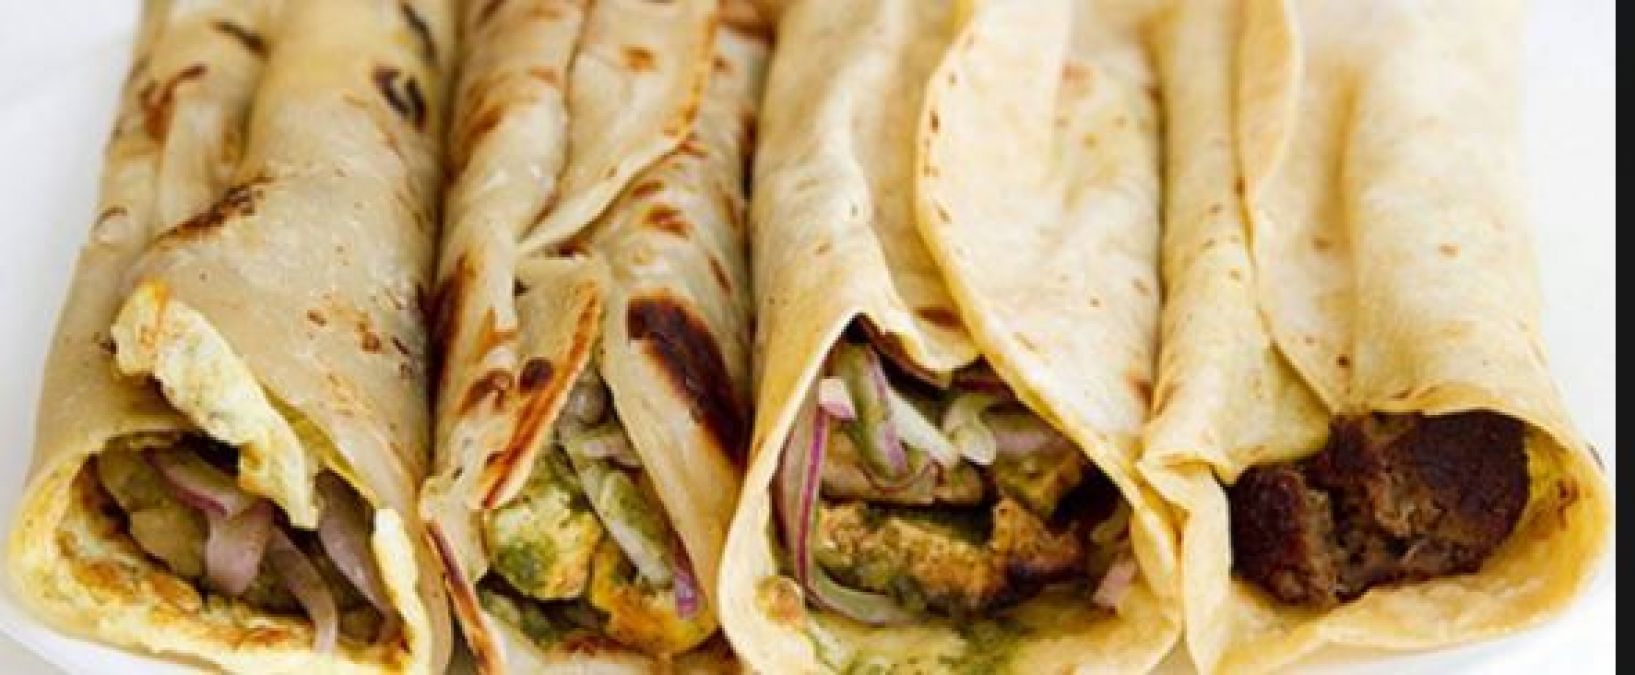 Veg kebab paratha is wonderful in taste, prepared with this method